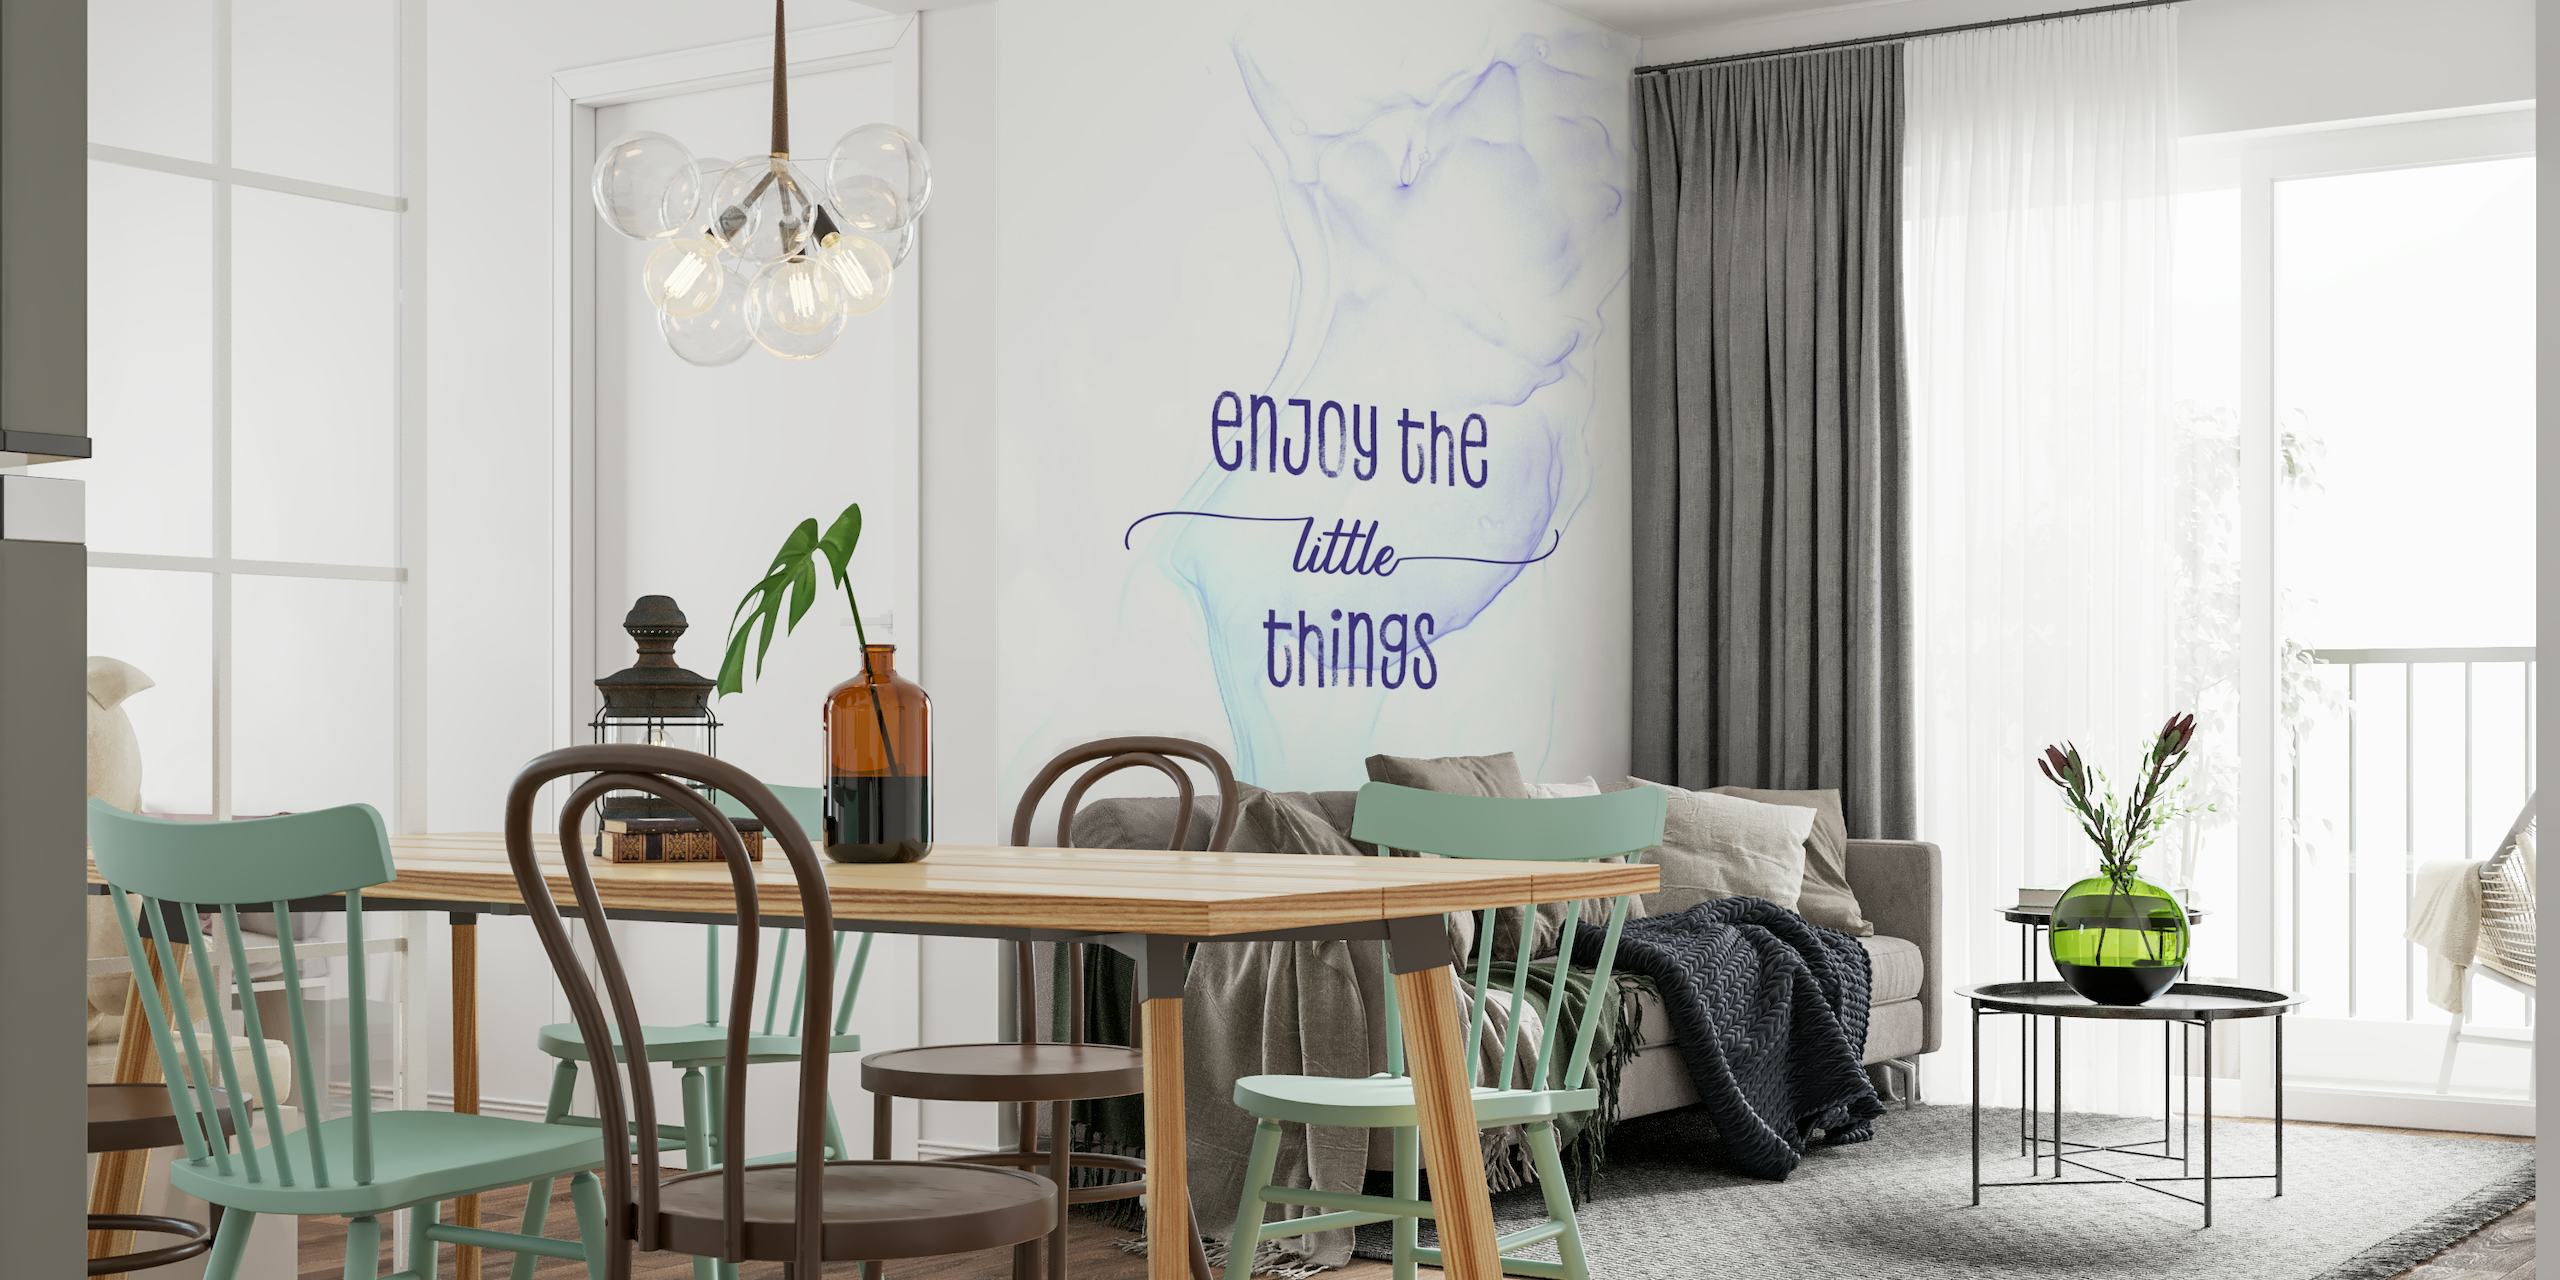 Inspirierendes Zitat-Wandbild mit „Enjoy Little Things“ vor einem Aquarell-Hintergrund